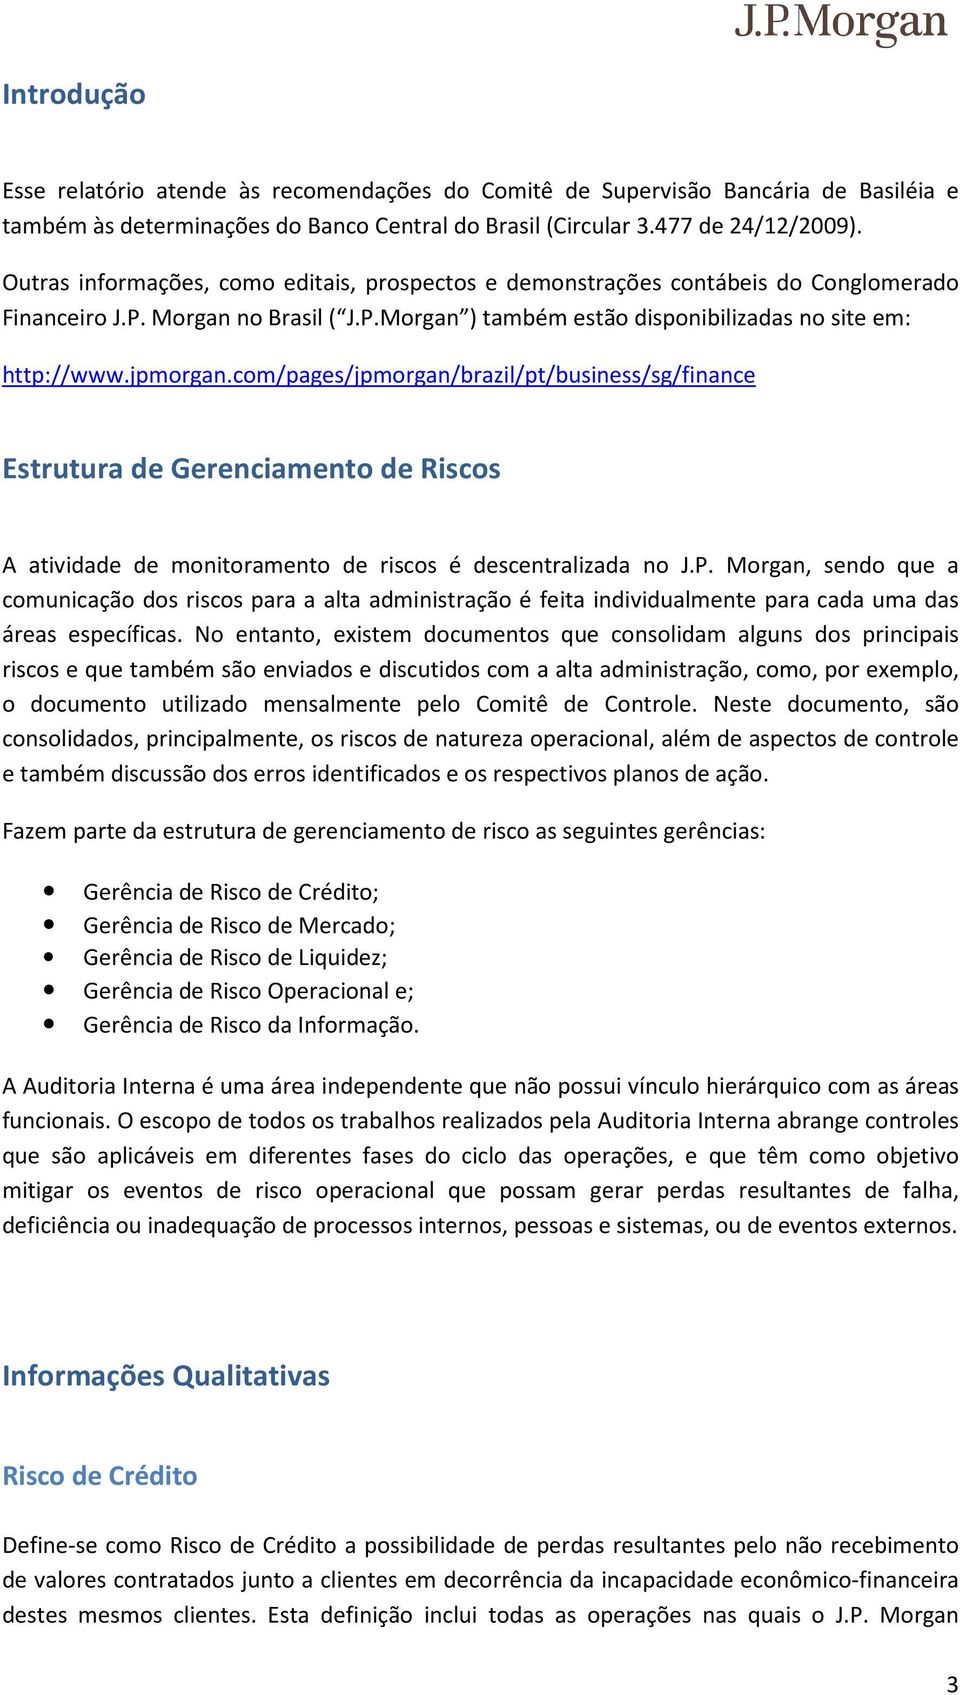 com/pages/jpmorgan/brazil/pt/business/sg/finance Estrutura de Gerenciamento de Riscos A atividade de monitoramento de riscos é descentralizada no J.P.